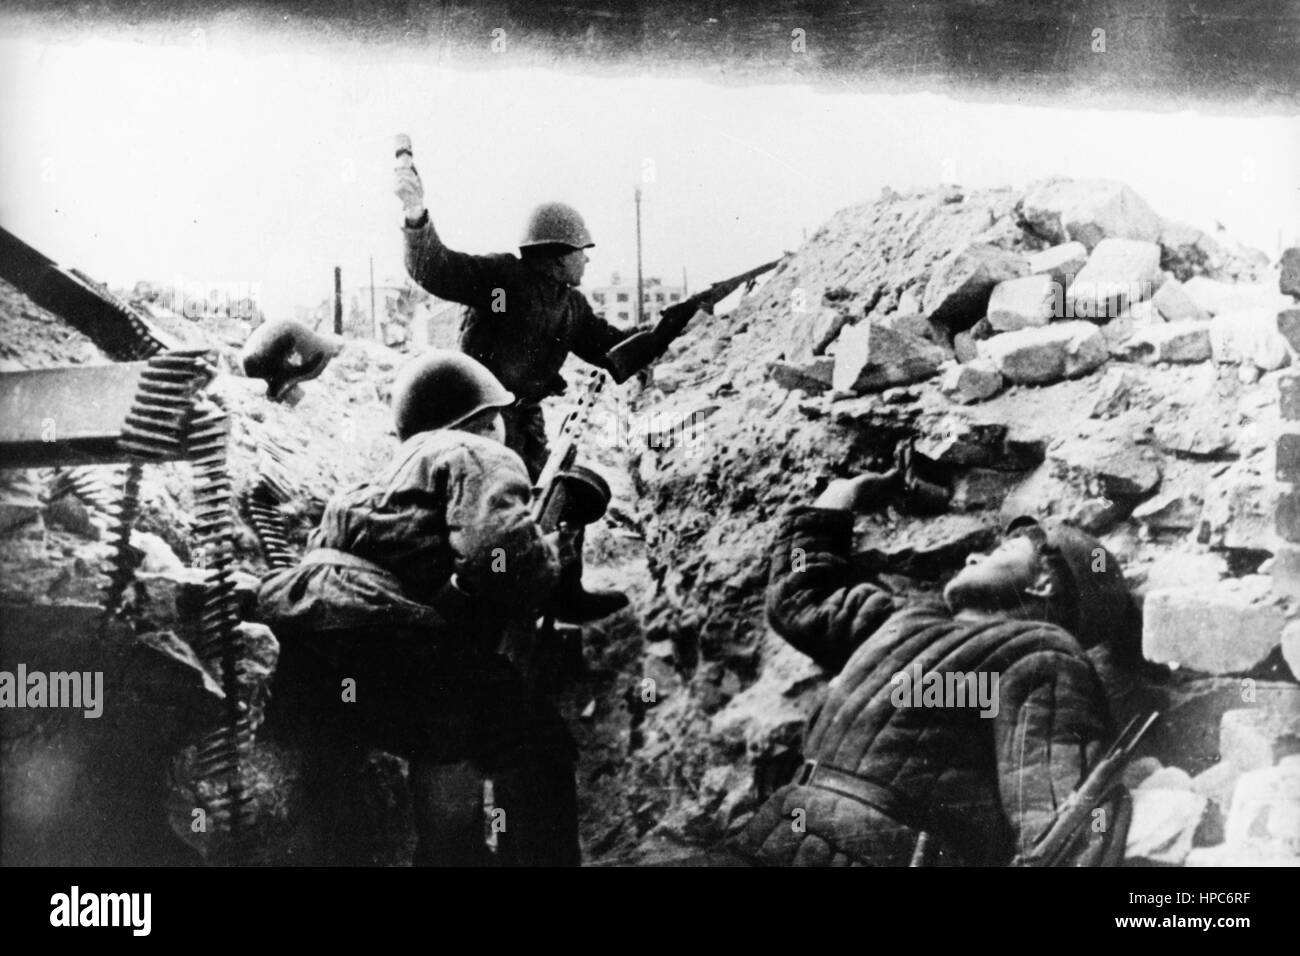 Des soldats de l'Armée rouge se battent dans les rues de la bataille de Stalingrad, Union soviétique, photo prise entre septembre 1942 et février 1943. Fotoarchiv für Zeitgeschichte | utilisation dans le monde entier Banque D'Images